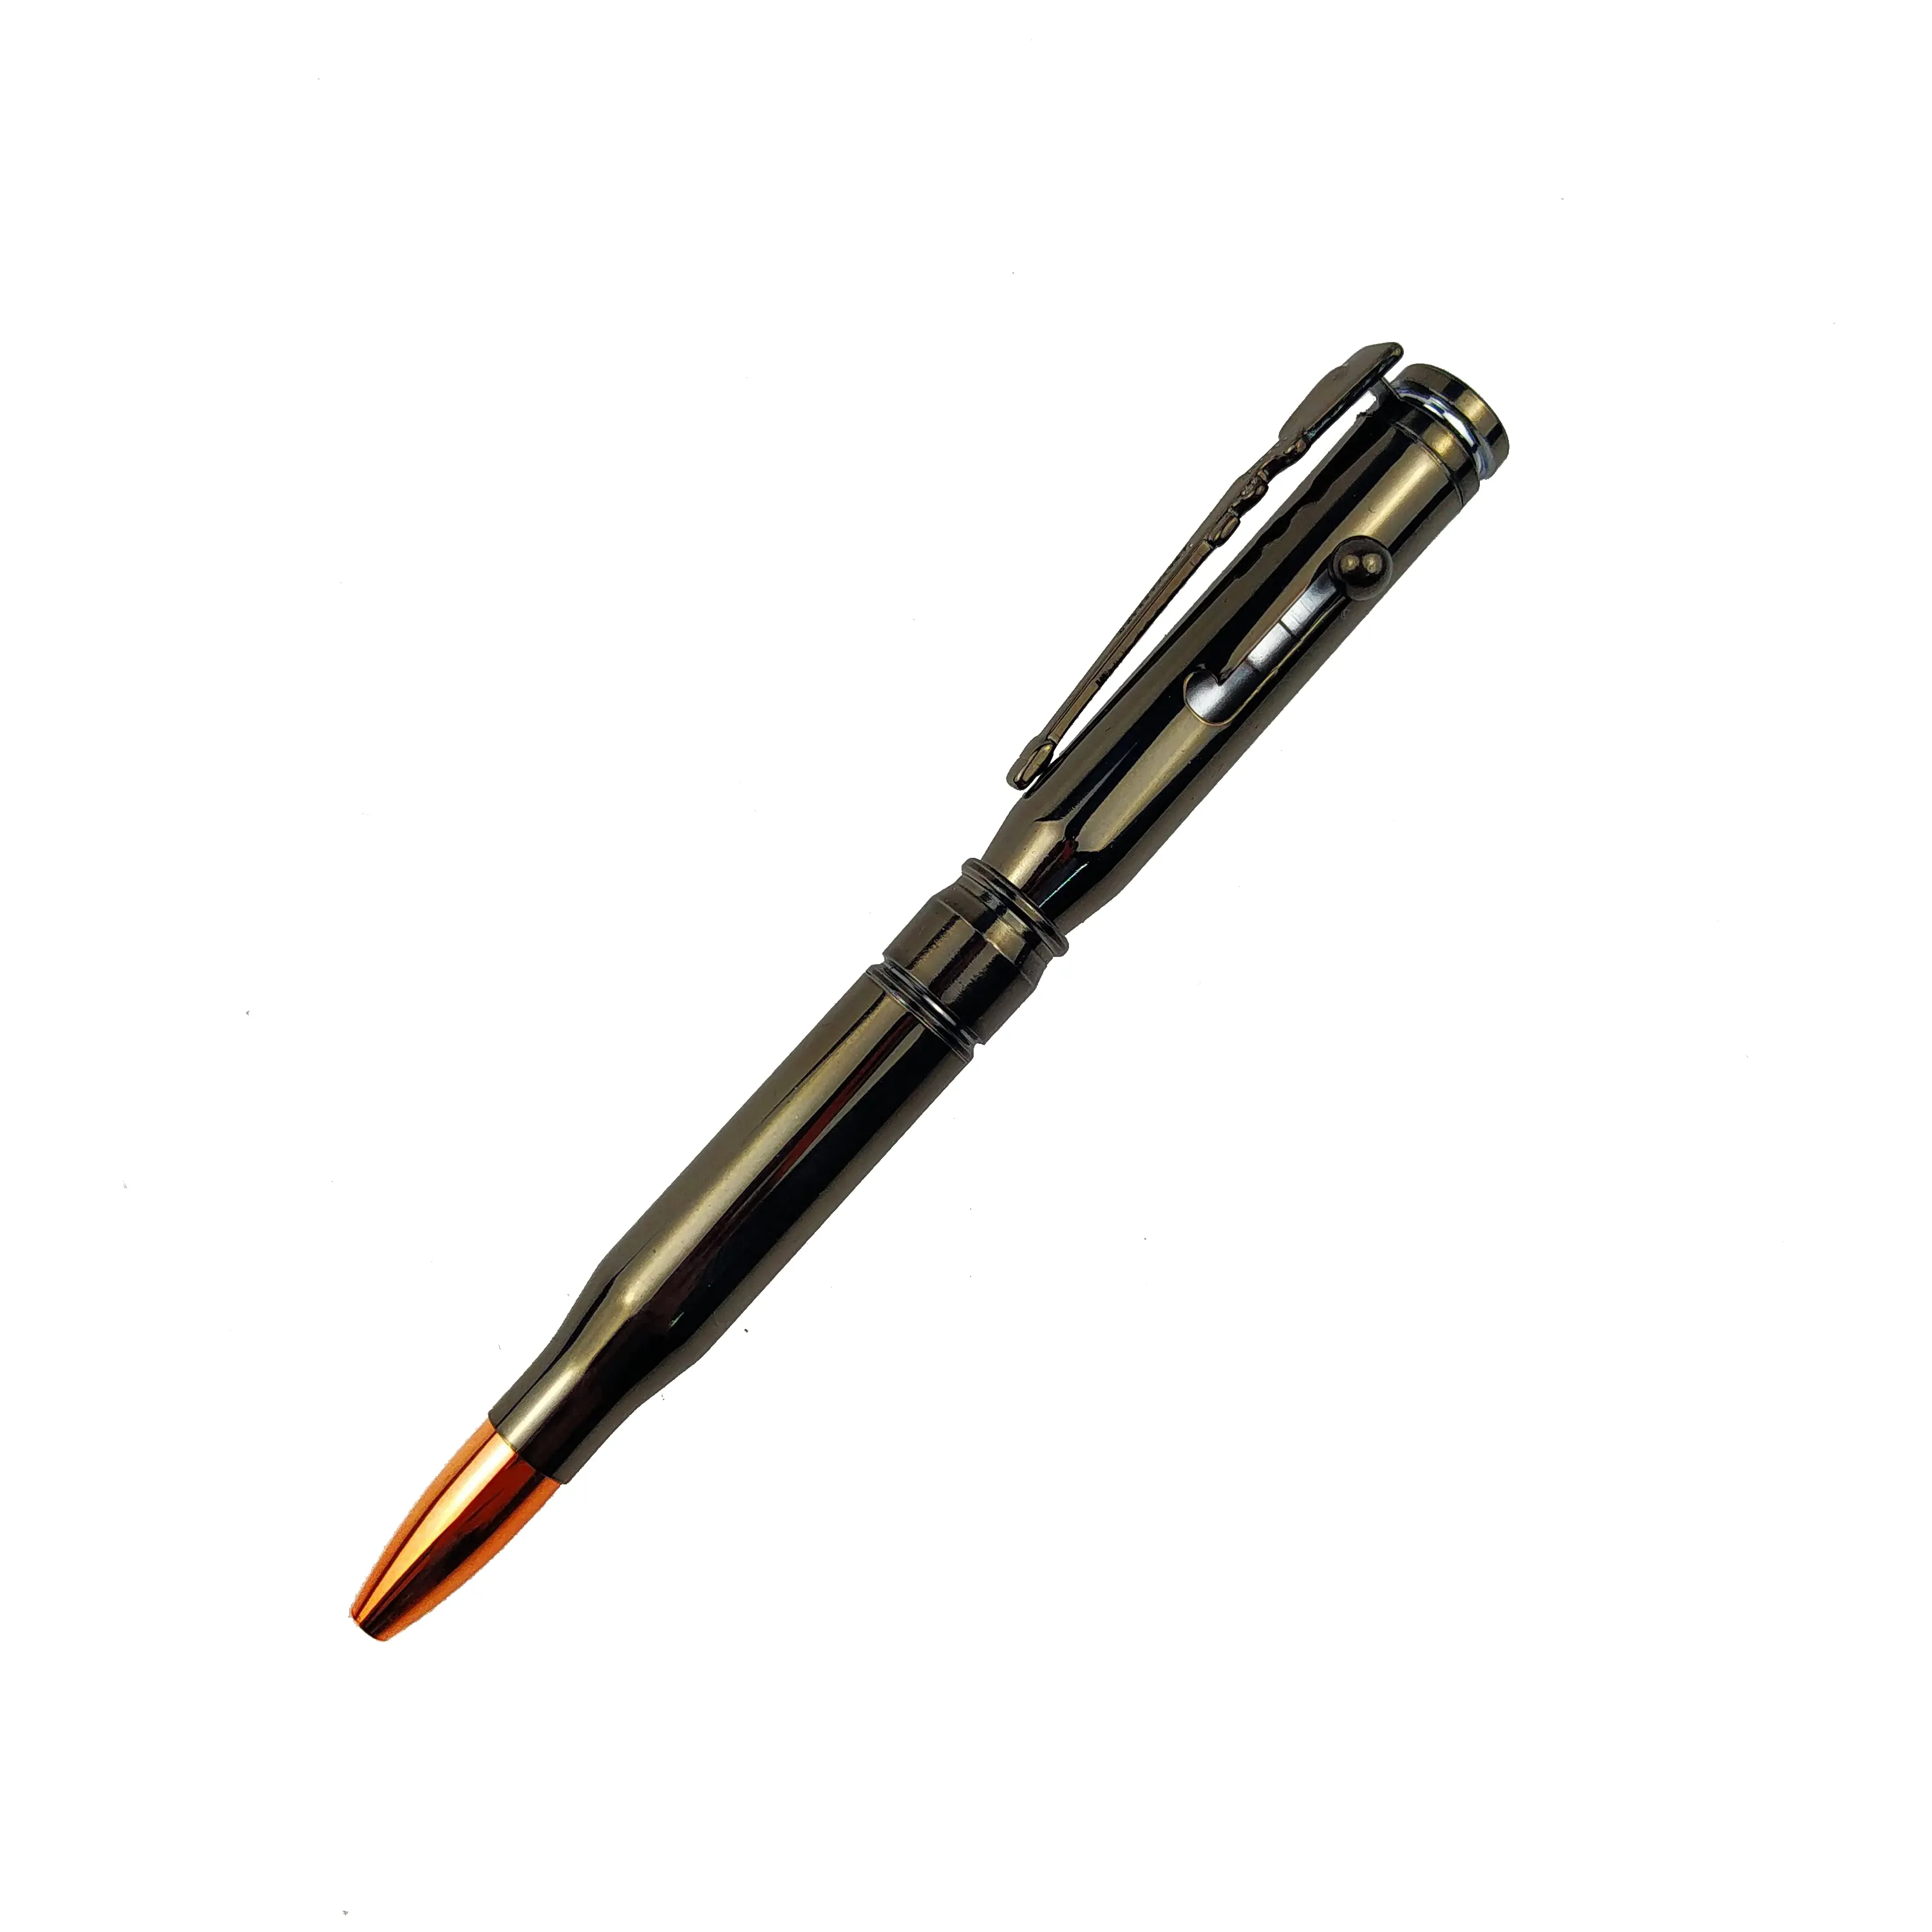 Vintage tüfek tarzı tükenmez kalem Metal ağır özel tasarım kişiselleştirilmiş şekilli tükenmez kalem